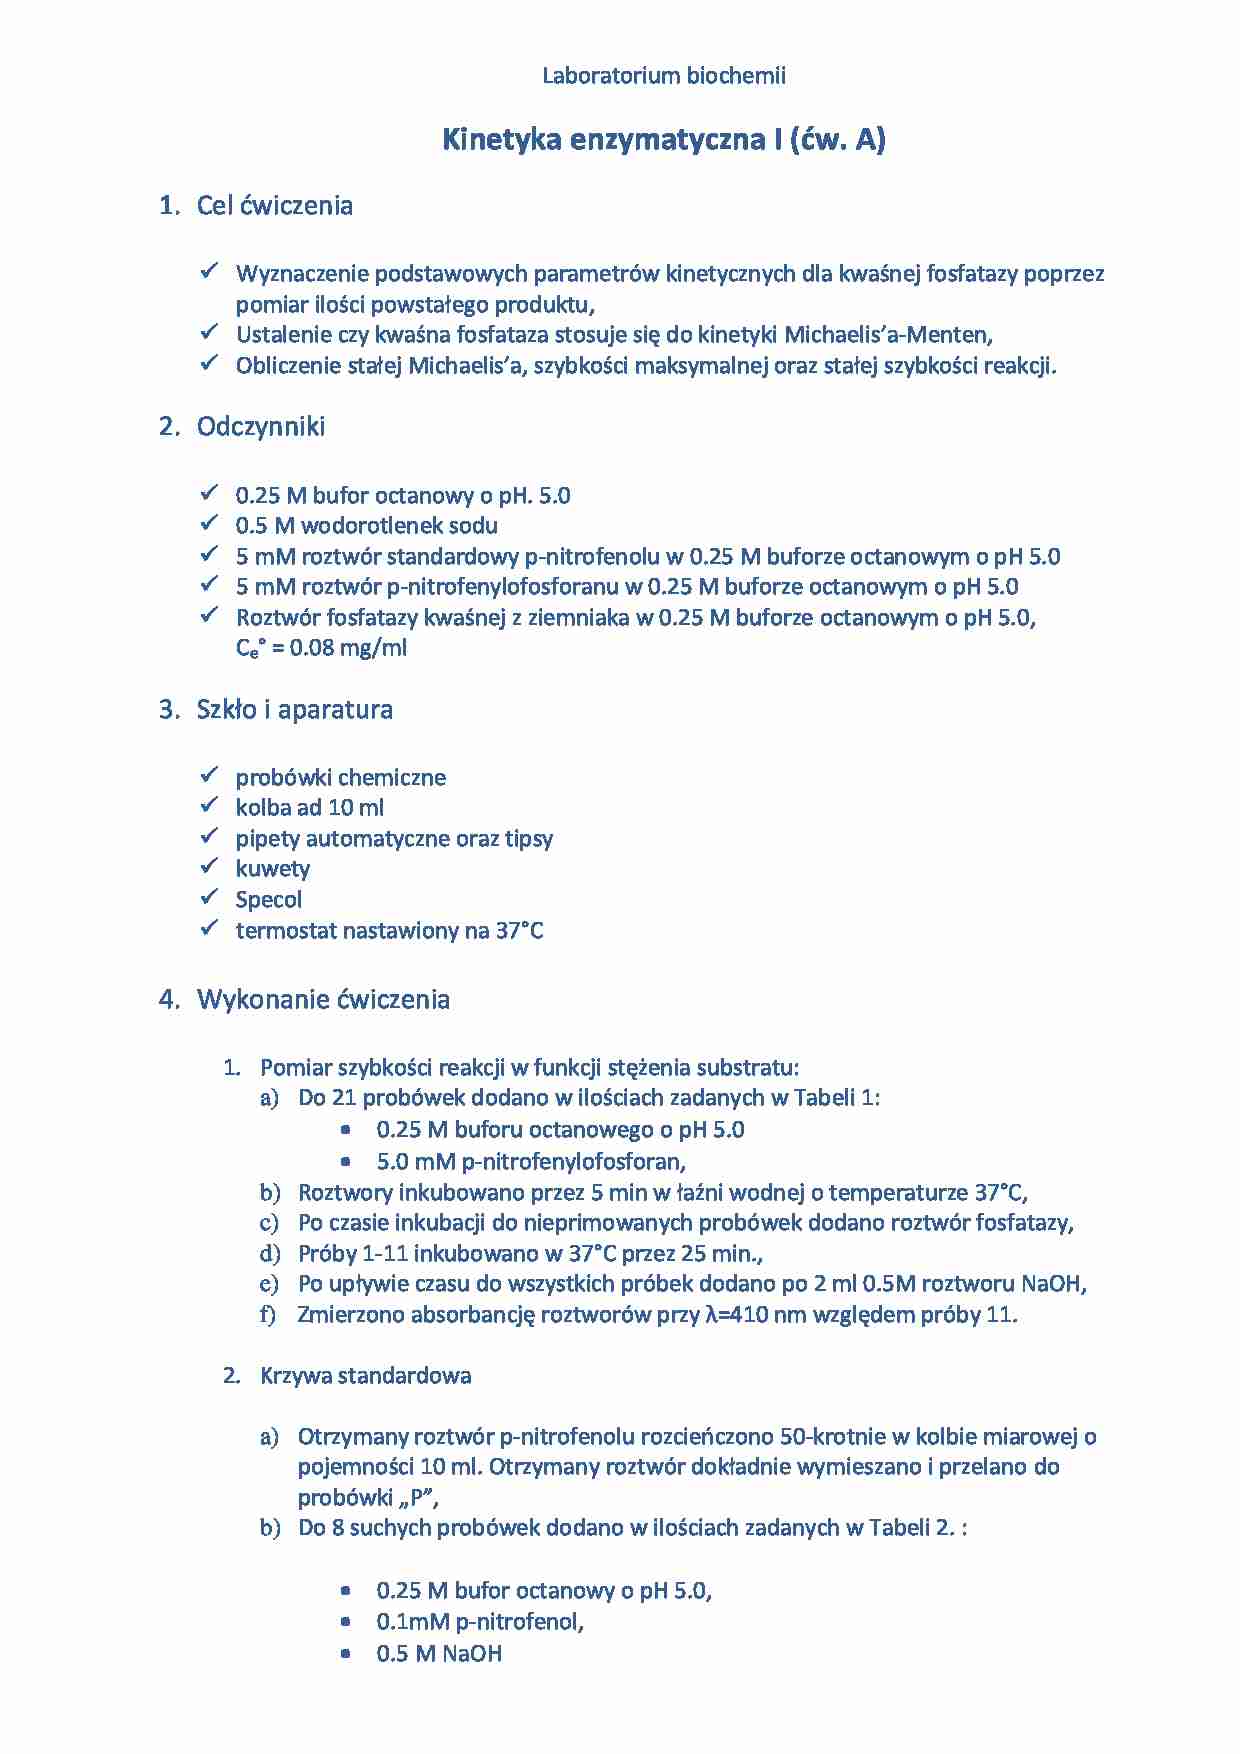 Kinetyka enzymatyczna- sprawozdanie - Fosfataza kwaśna - strona 1